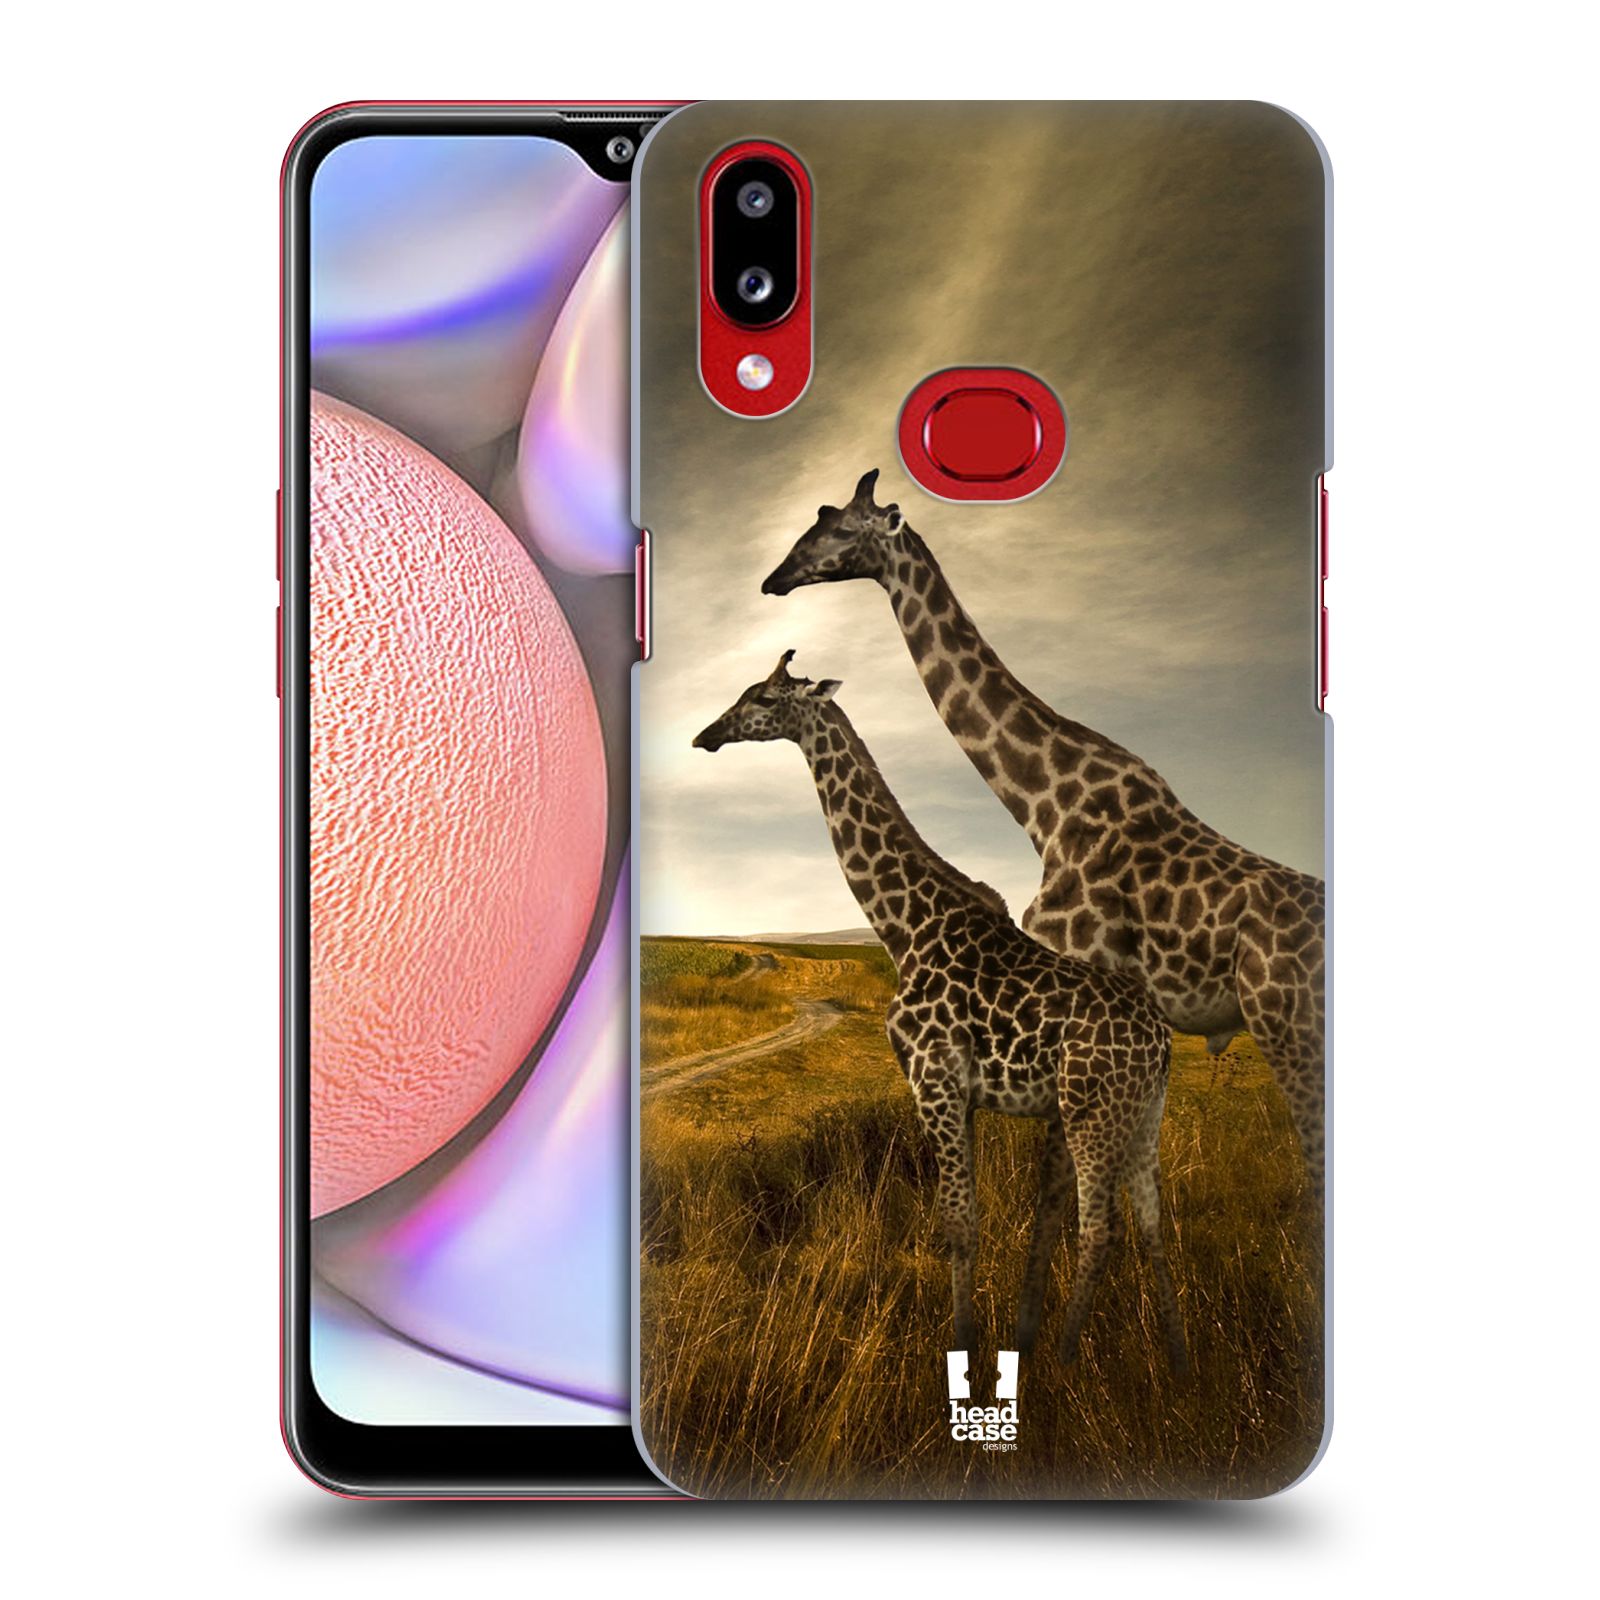 Zadní obal pro mobil Samsung Galaxy A10s - HEAD CASE - Svět zvířat žirafy